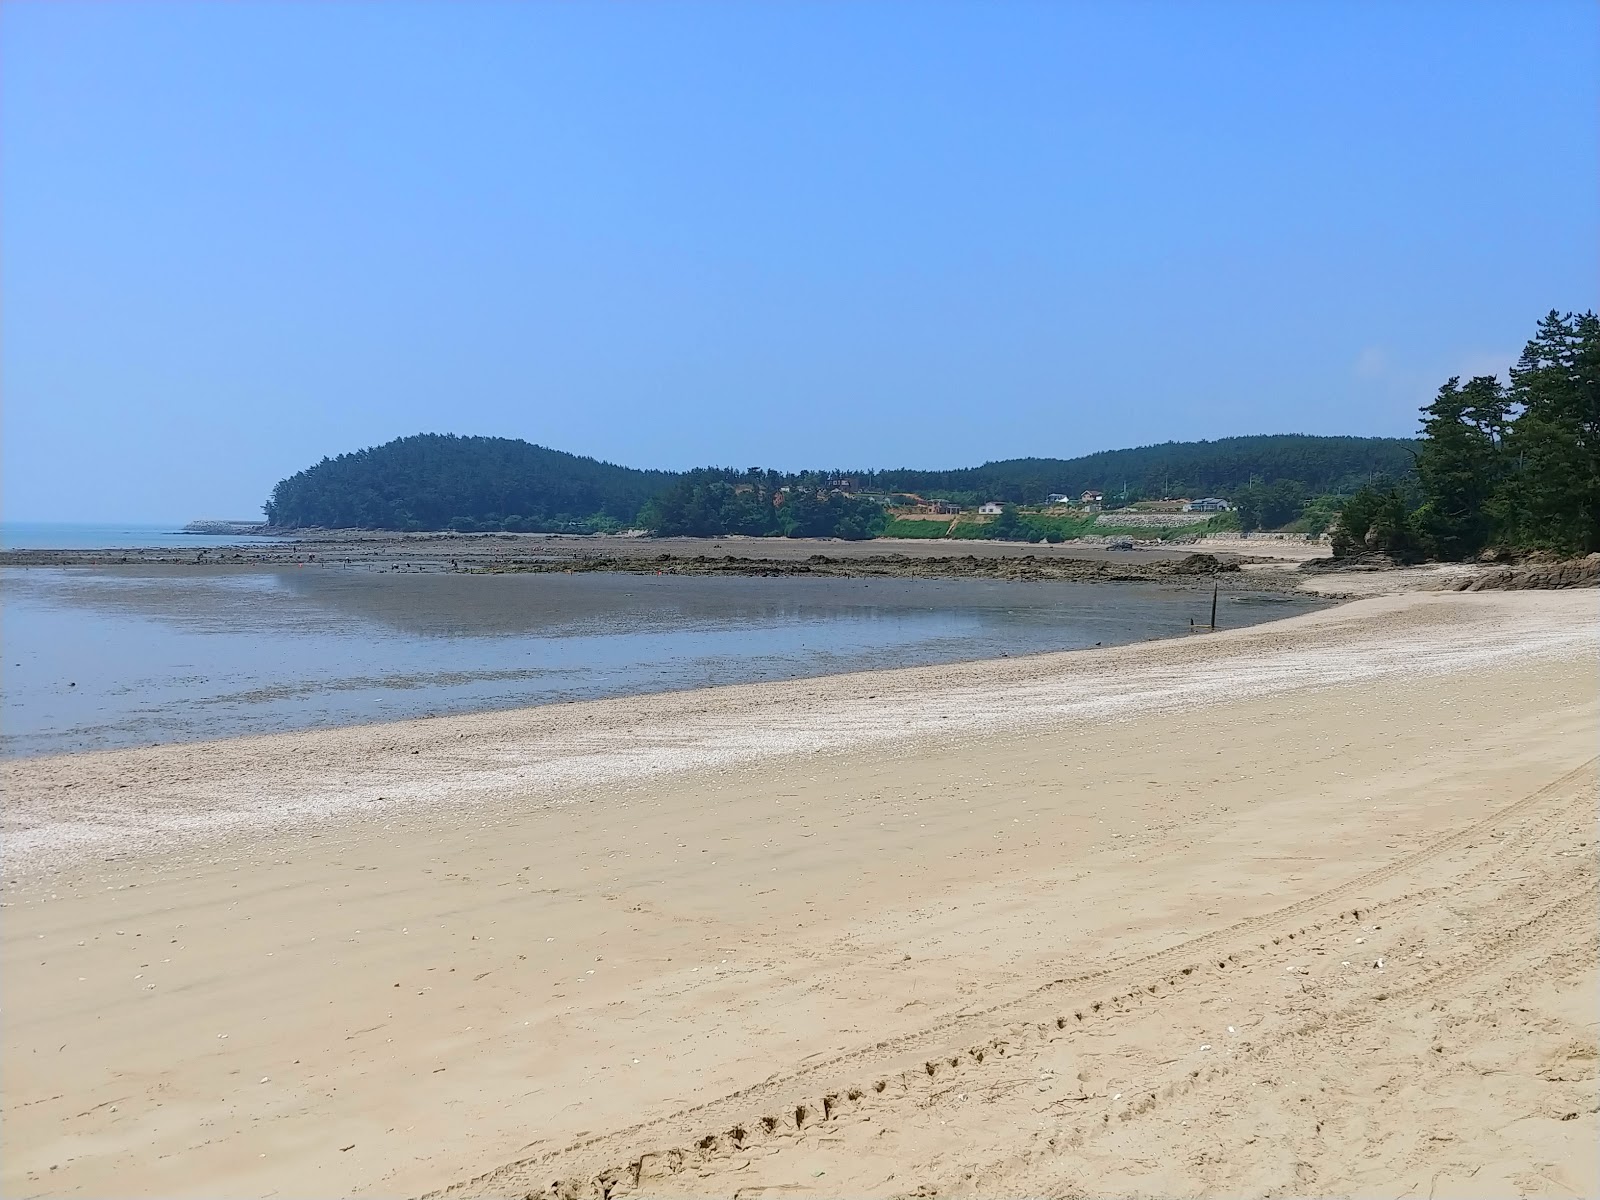 Zdjęcie Wonan Beach z powierzchnią jasny piasek